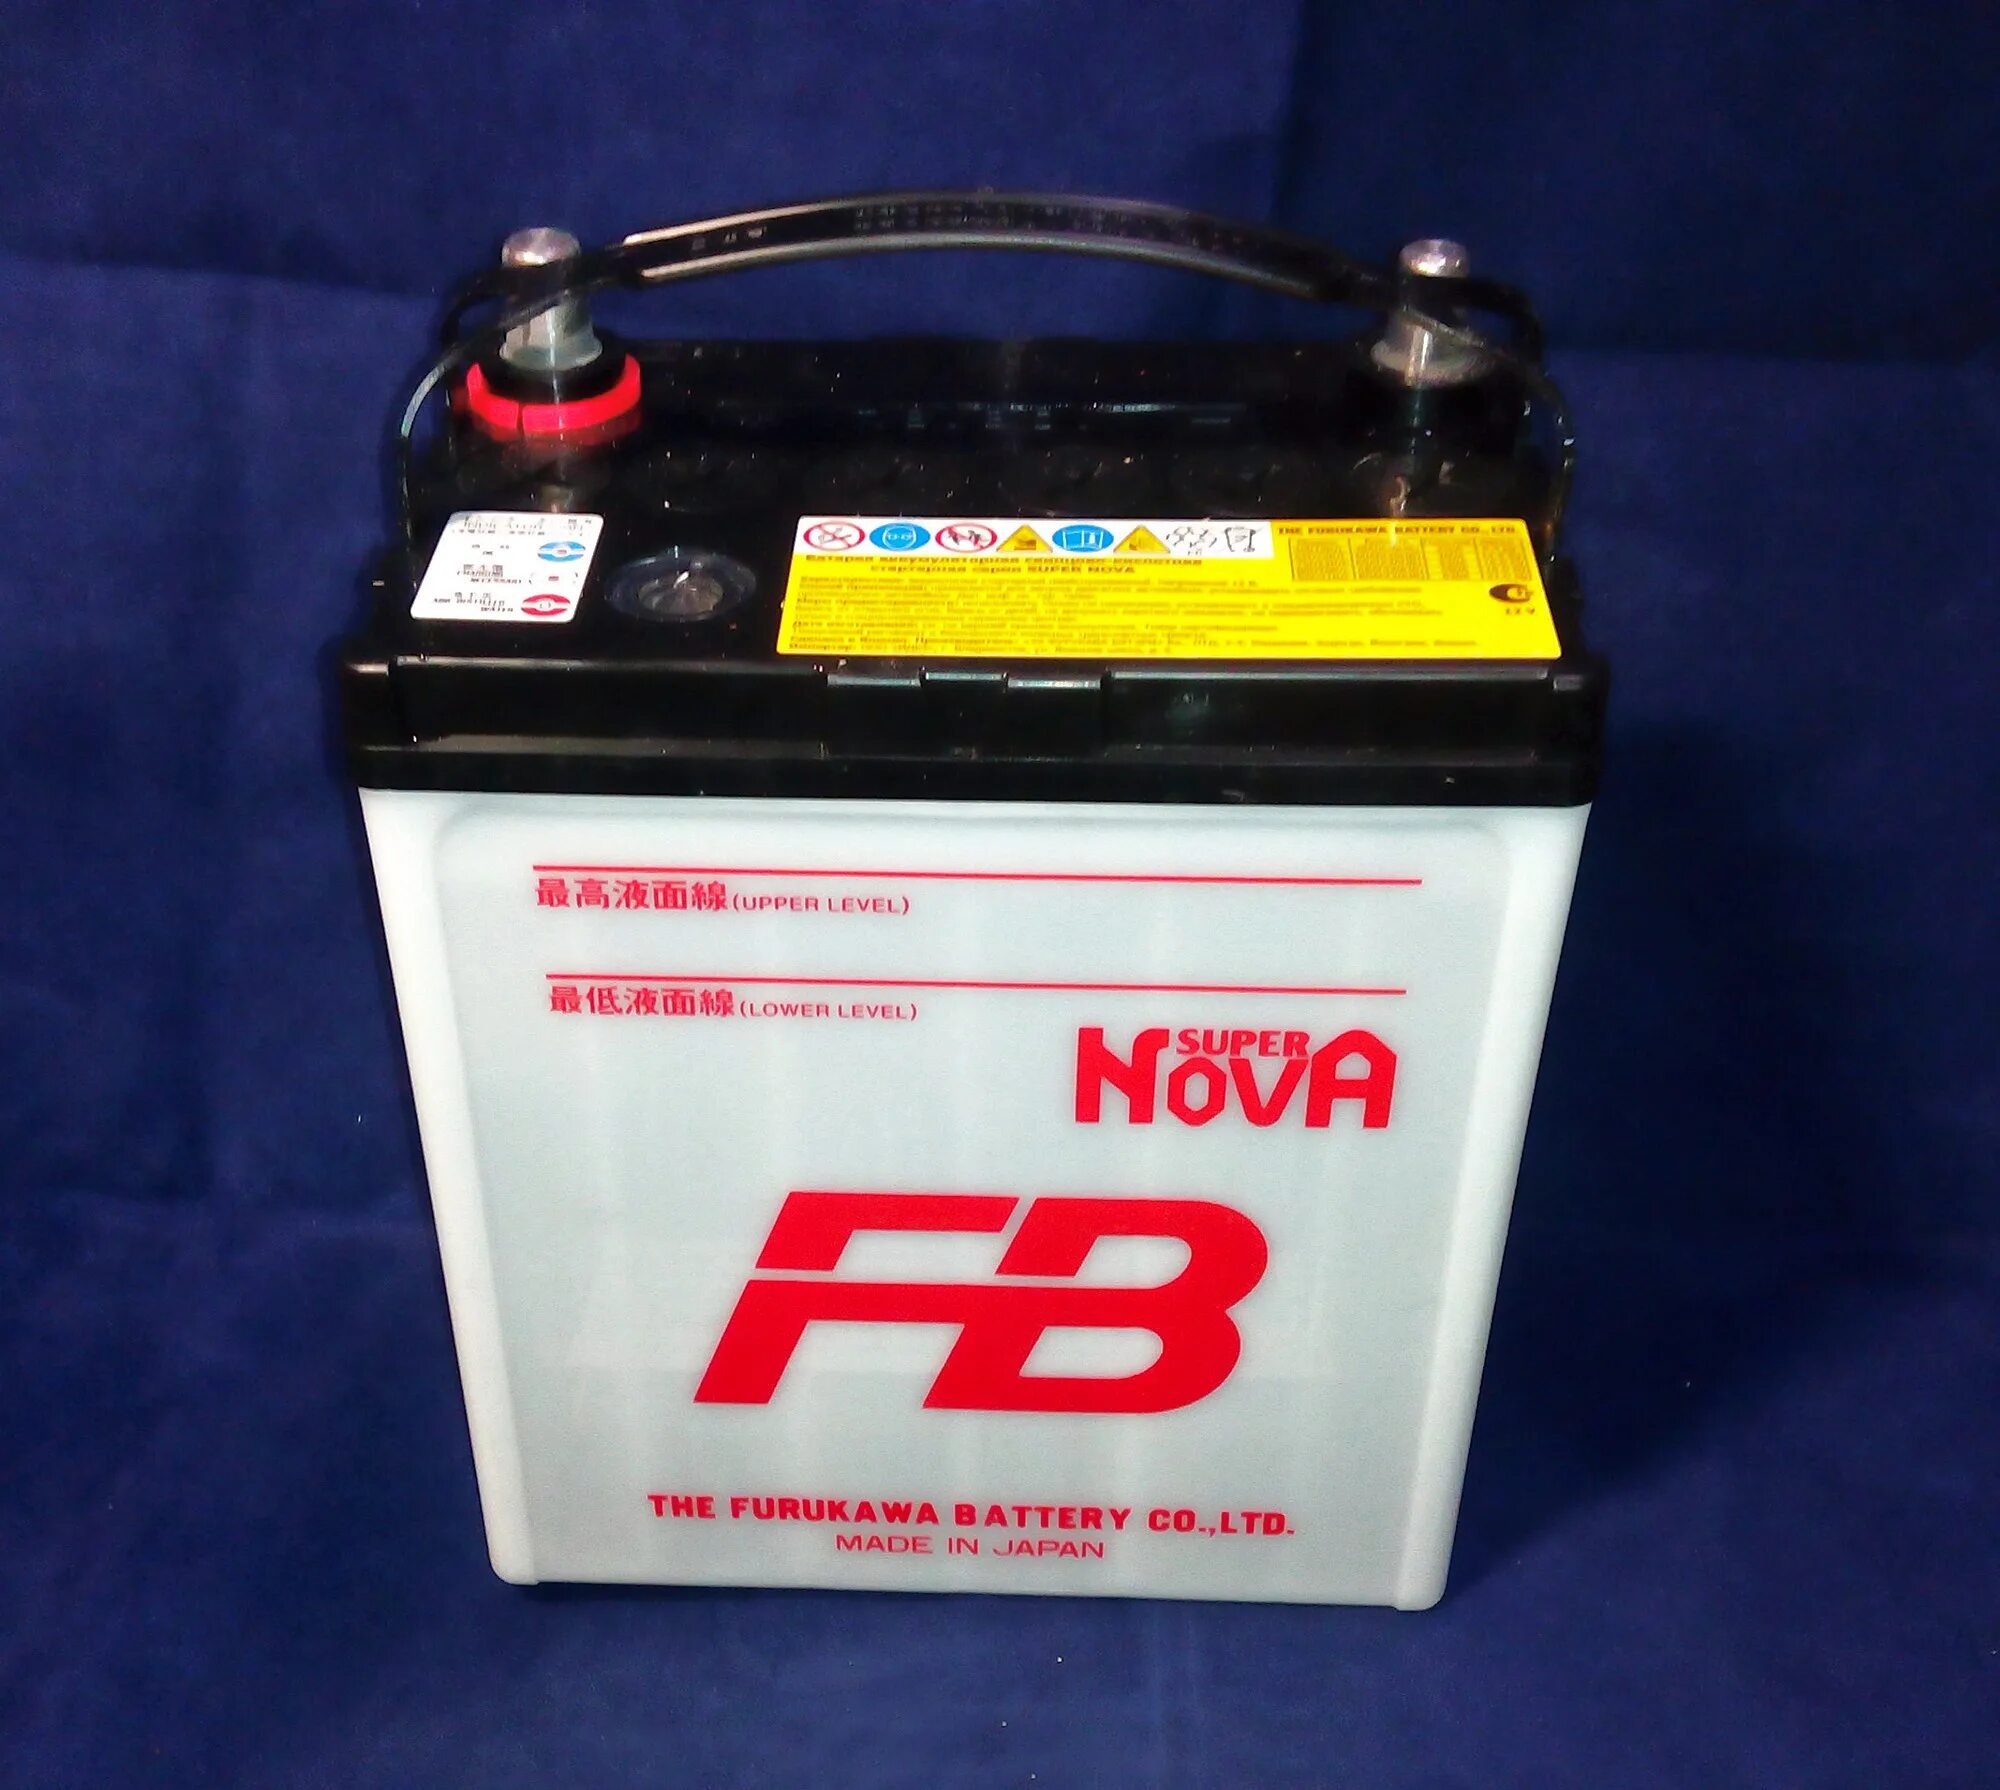 Furukawa Battery fb super Nova 40b19l. Furukawa аккумулятор fb super Nova. Аккумулятор Furukawa 40b19l. Furukawa battery40b19lбатарея аккумуляторная "fb super Nova", 12в 38а/ч.